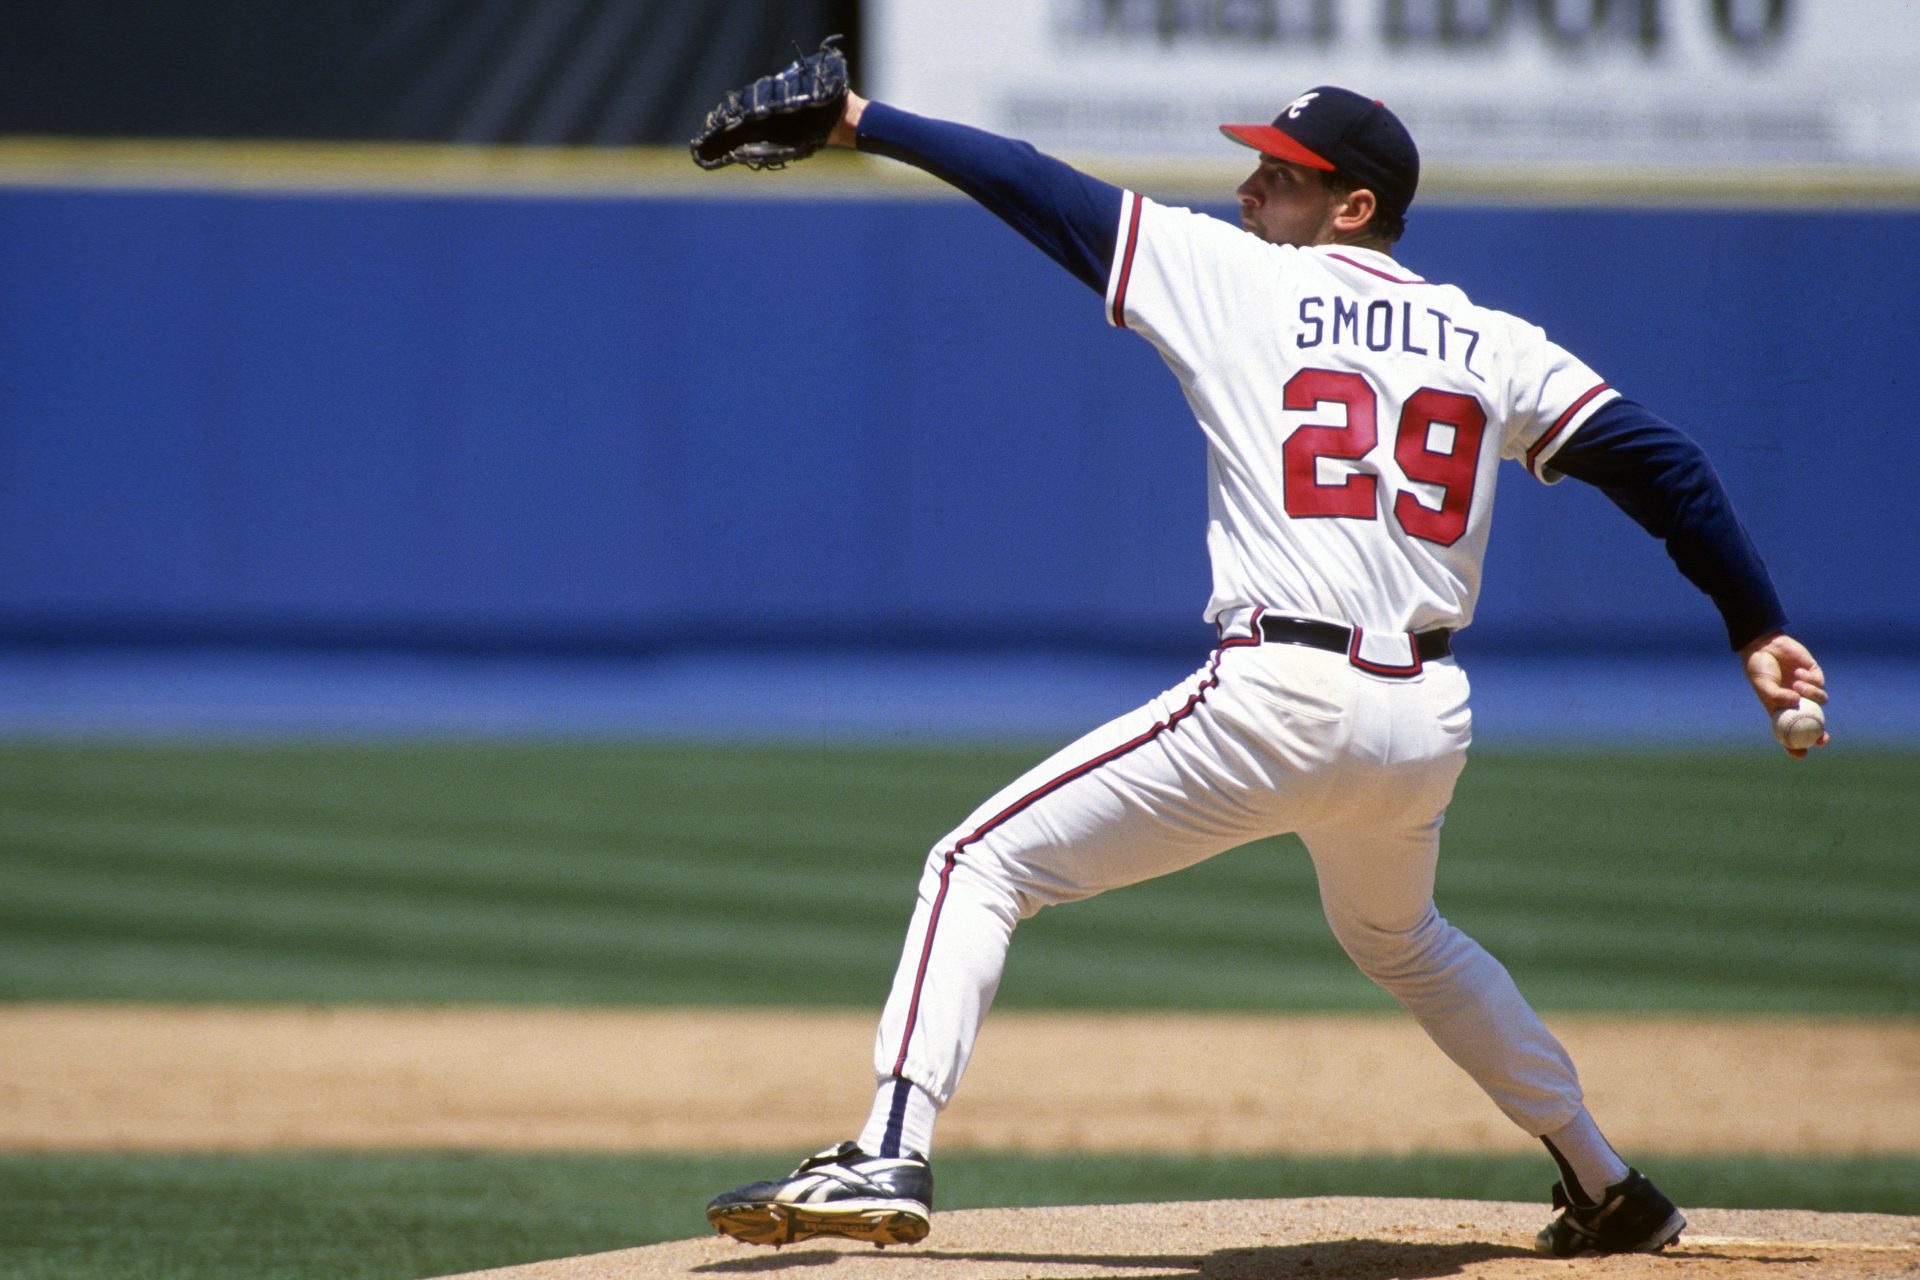 2 - 1987: Detroit Tigers trade John Smoltz to the Atlanta Braves